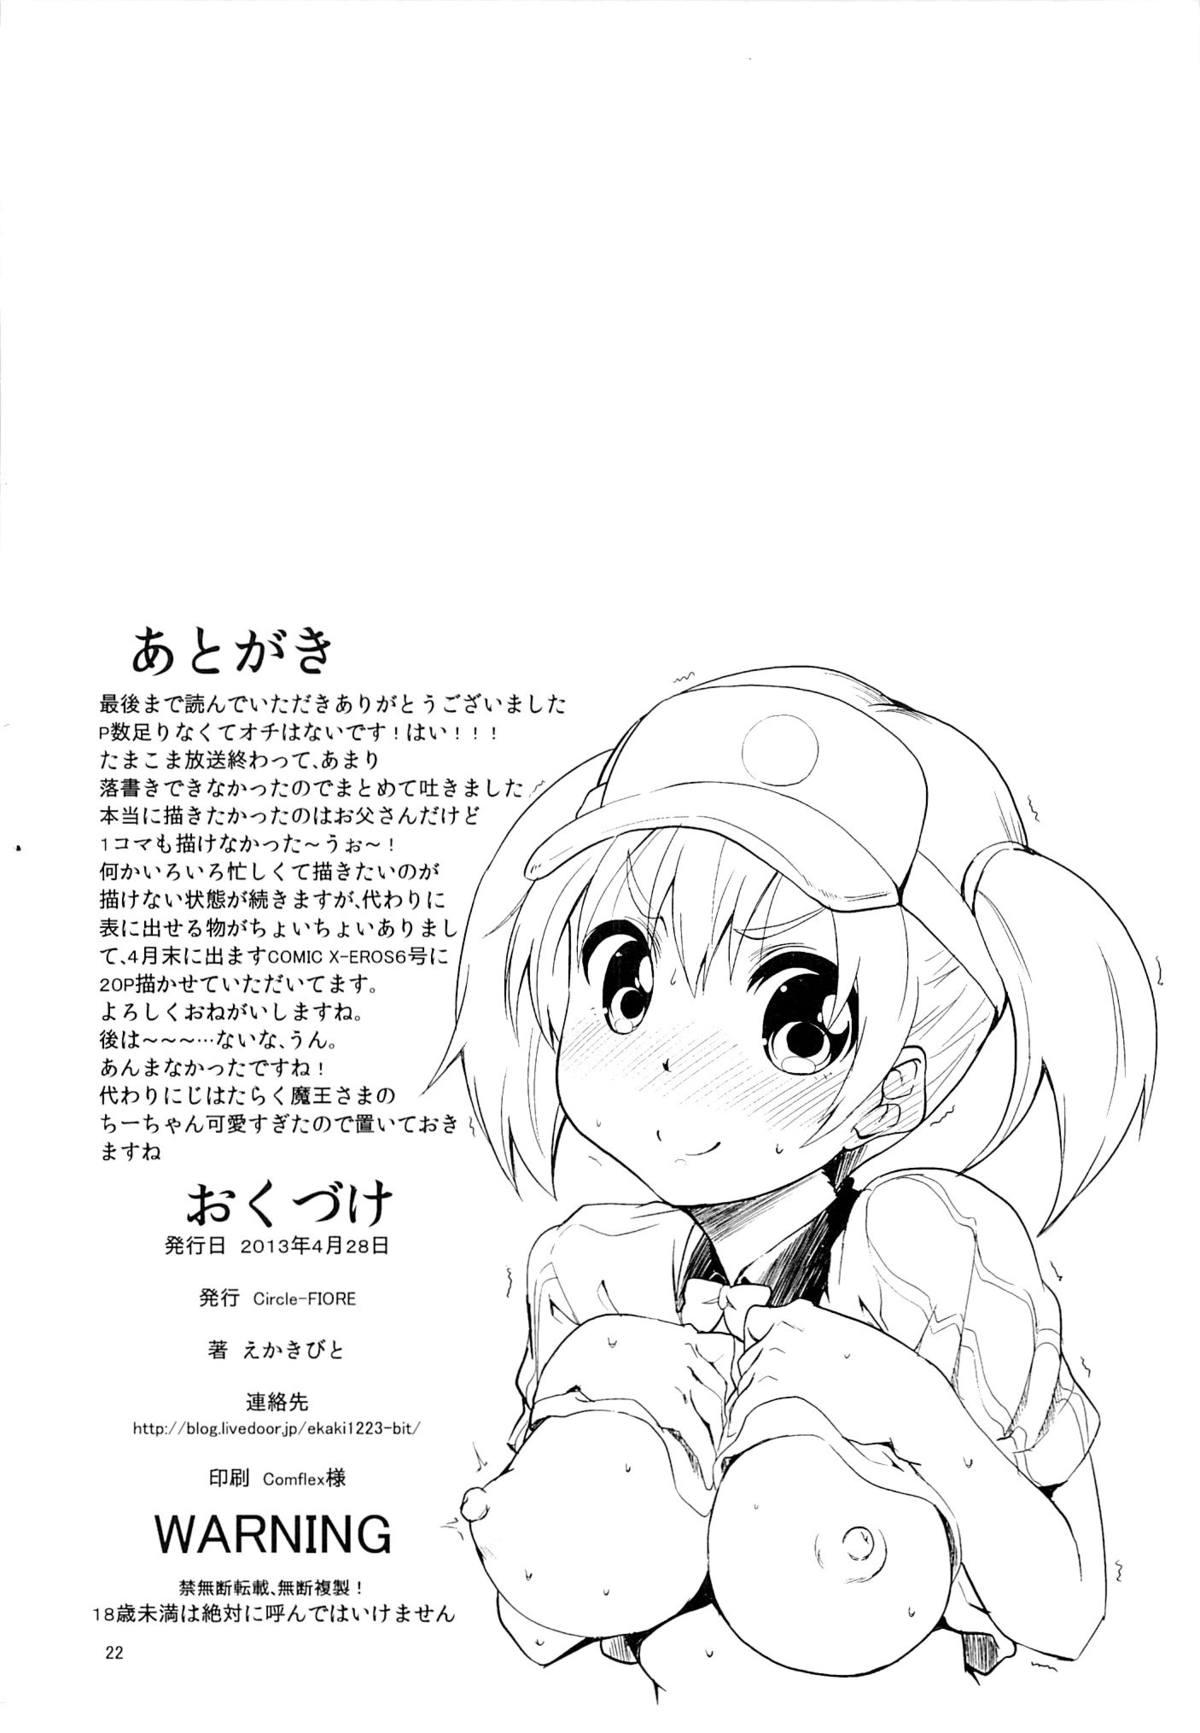 Boquete Korekara wa Anko demo Iiyo? - Tamako market Bisex - Page 21